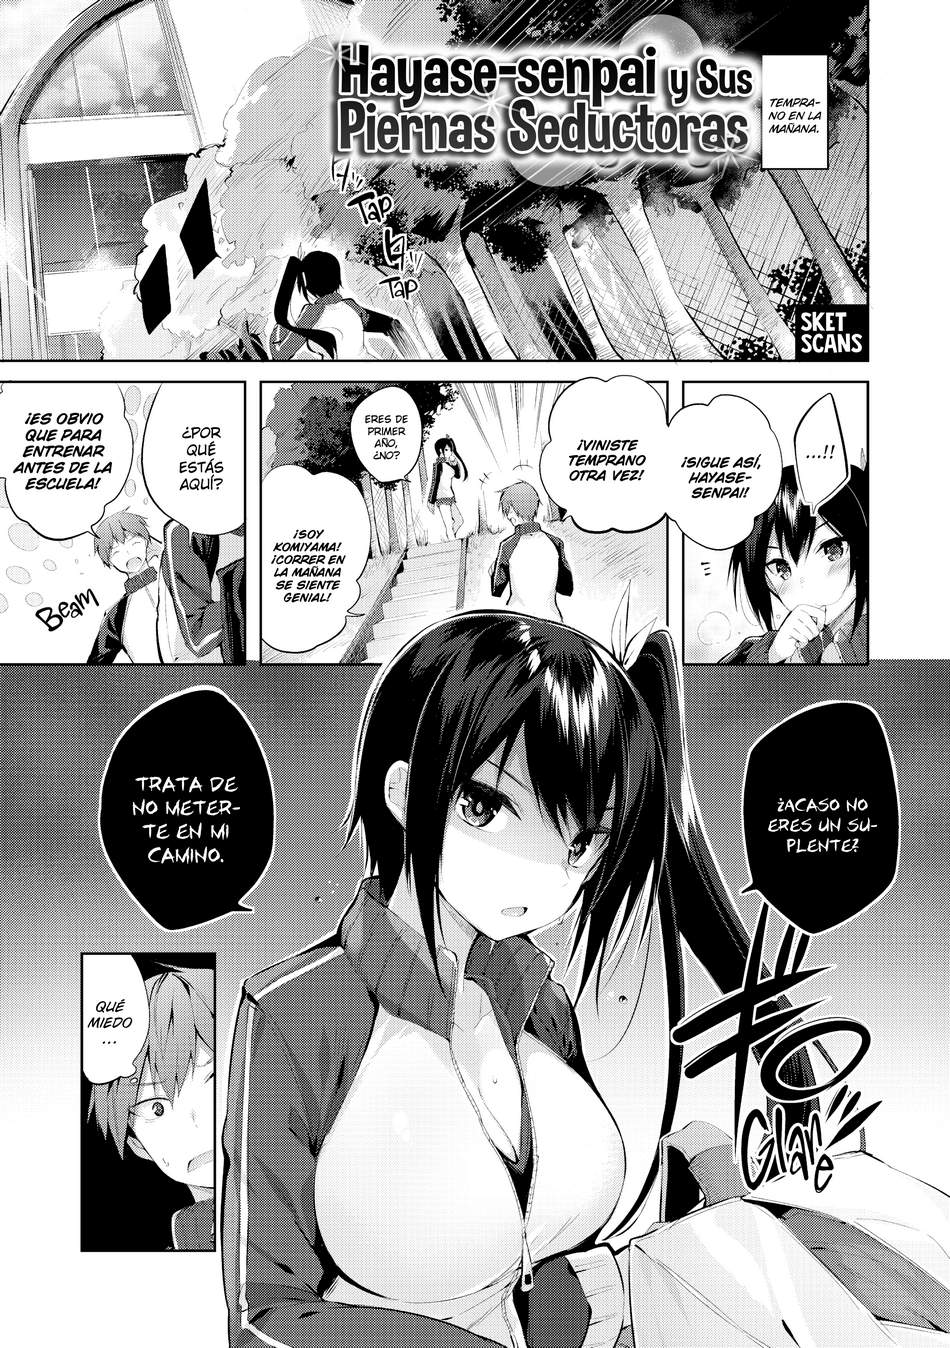 Hayase-senpai y sus piernas seductoras - Page #1